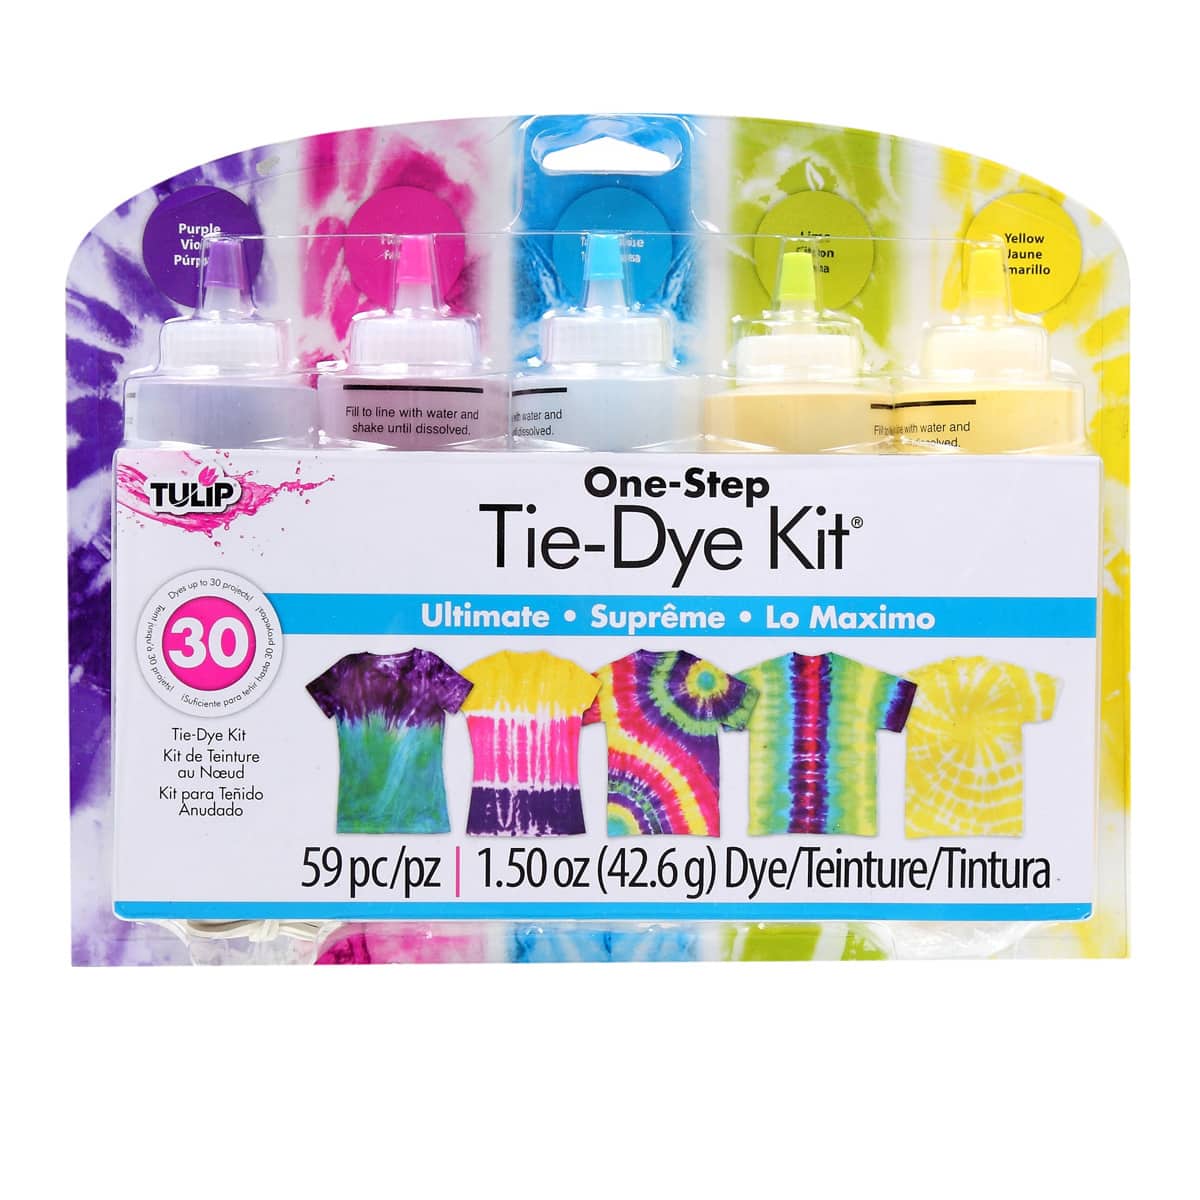 Tie Dye Kit, Fabric Dye, Tie Dye DIY T-Shirt Set